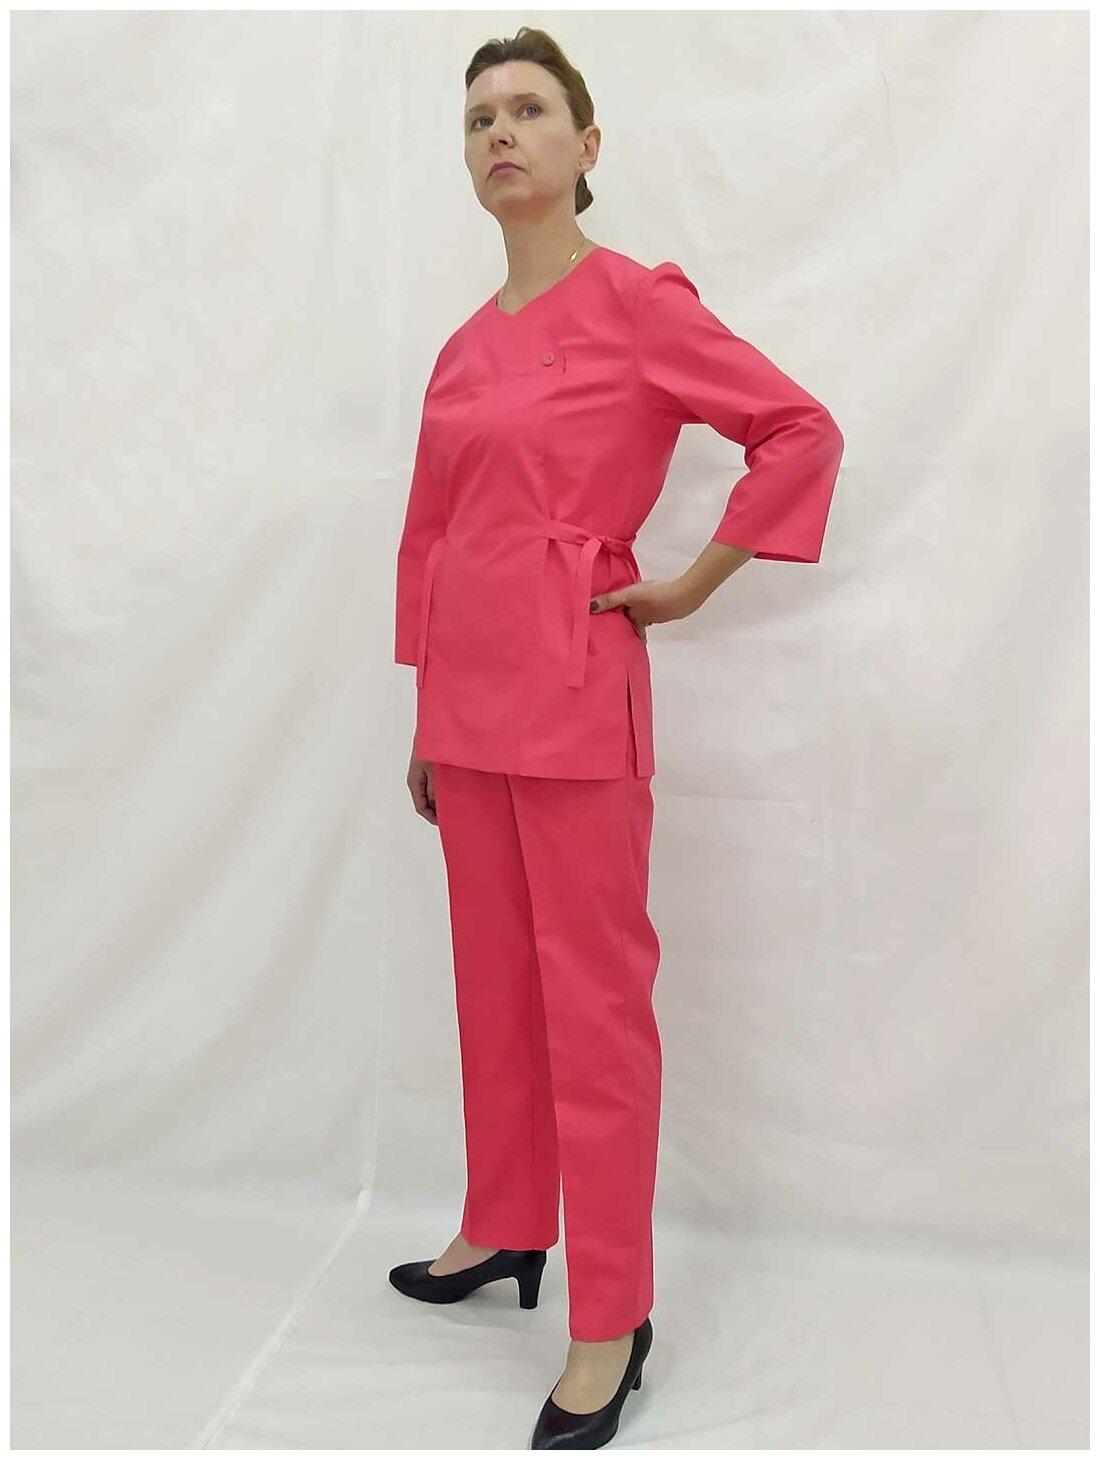 Костюм женский, производитель Фабрика швейных изделий №3, модель М-514/135, размер 42, цвет ярко-алый